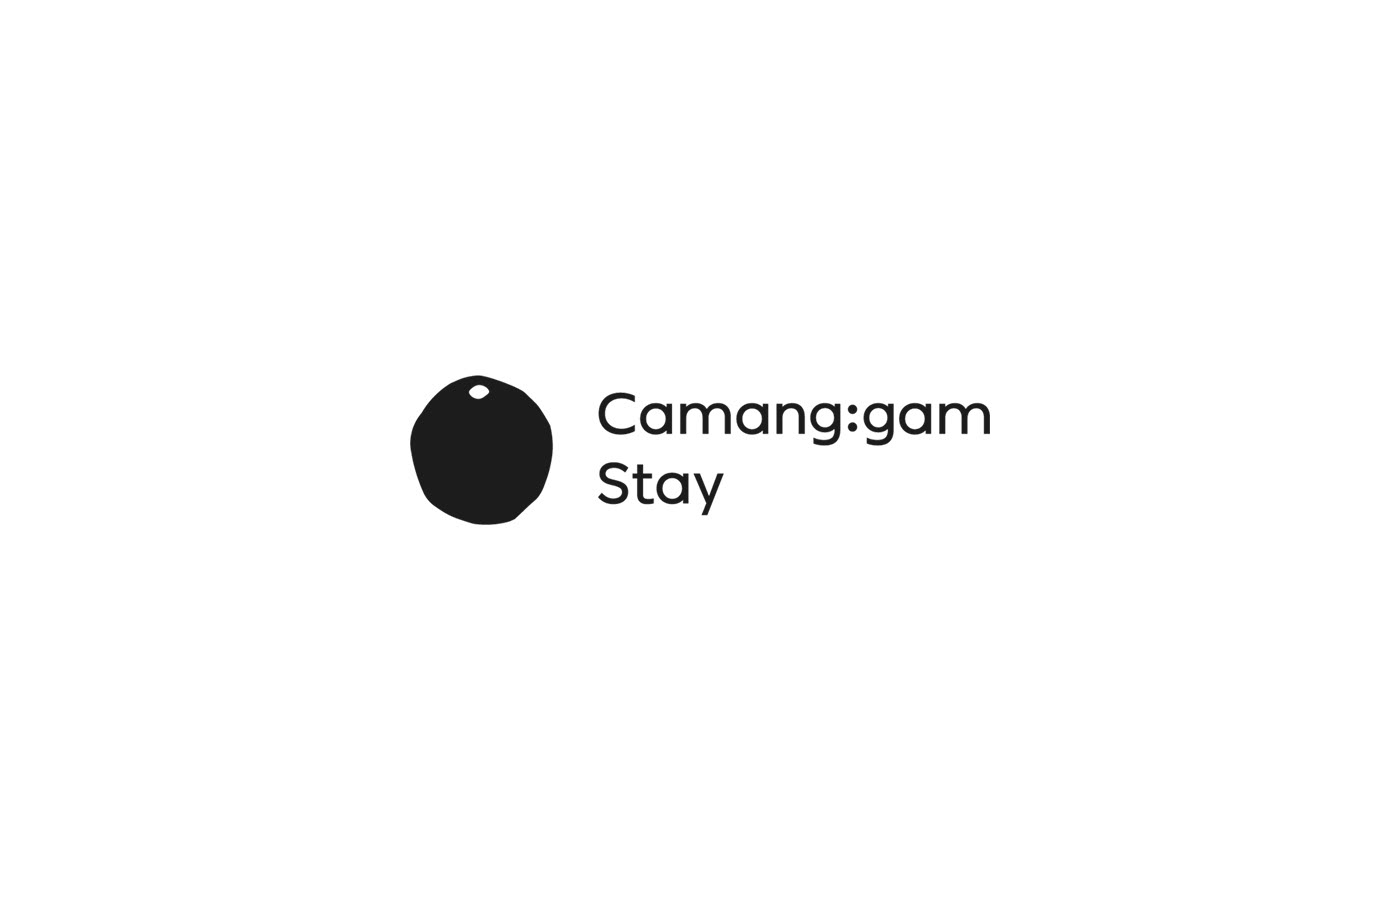 韩国Camang:gam旅馆品牌VI设计